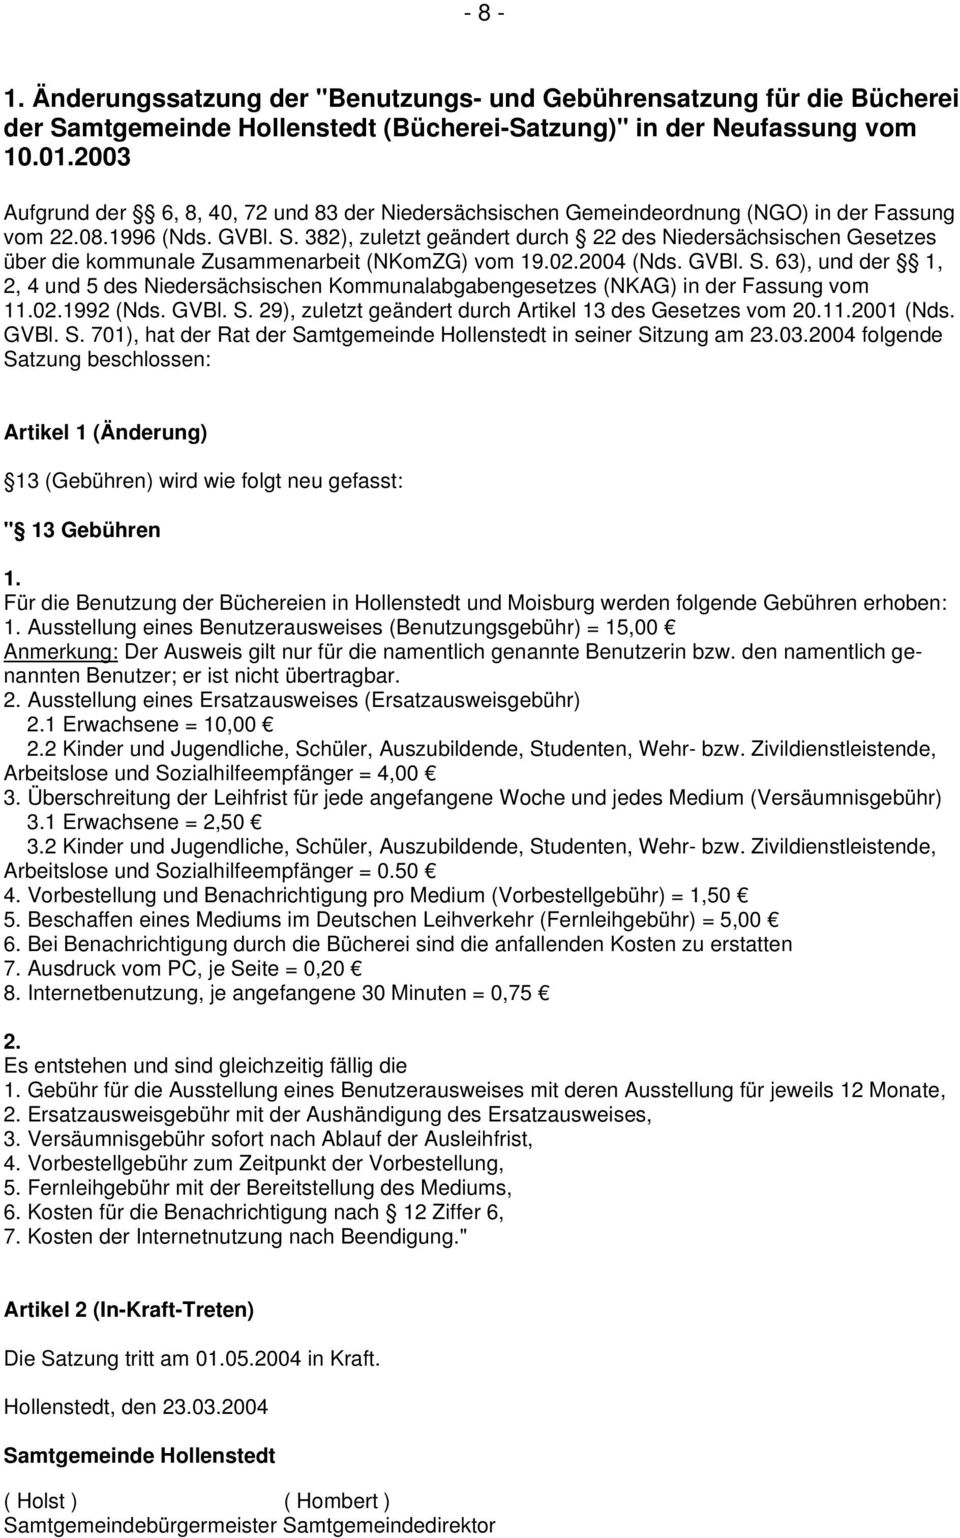 382), zuletzt geändert durch 22 des Niedersächsischen Gesetzes über die kommunale Zusammenarbeit (NKomZG) vom 19.02.2004 (Nds. GVBl. S.